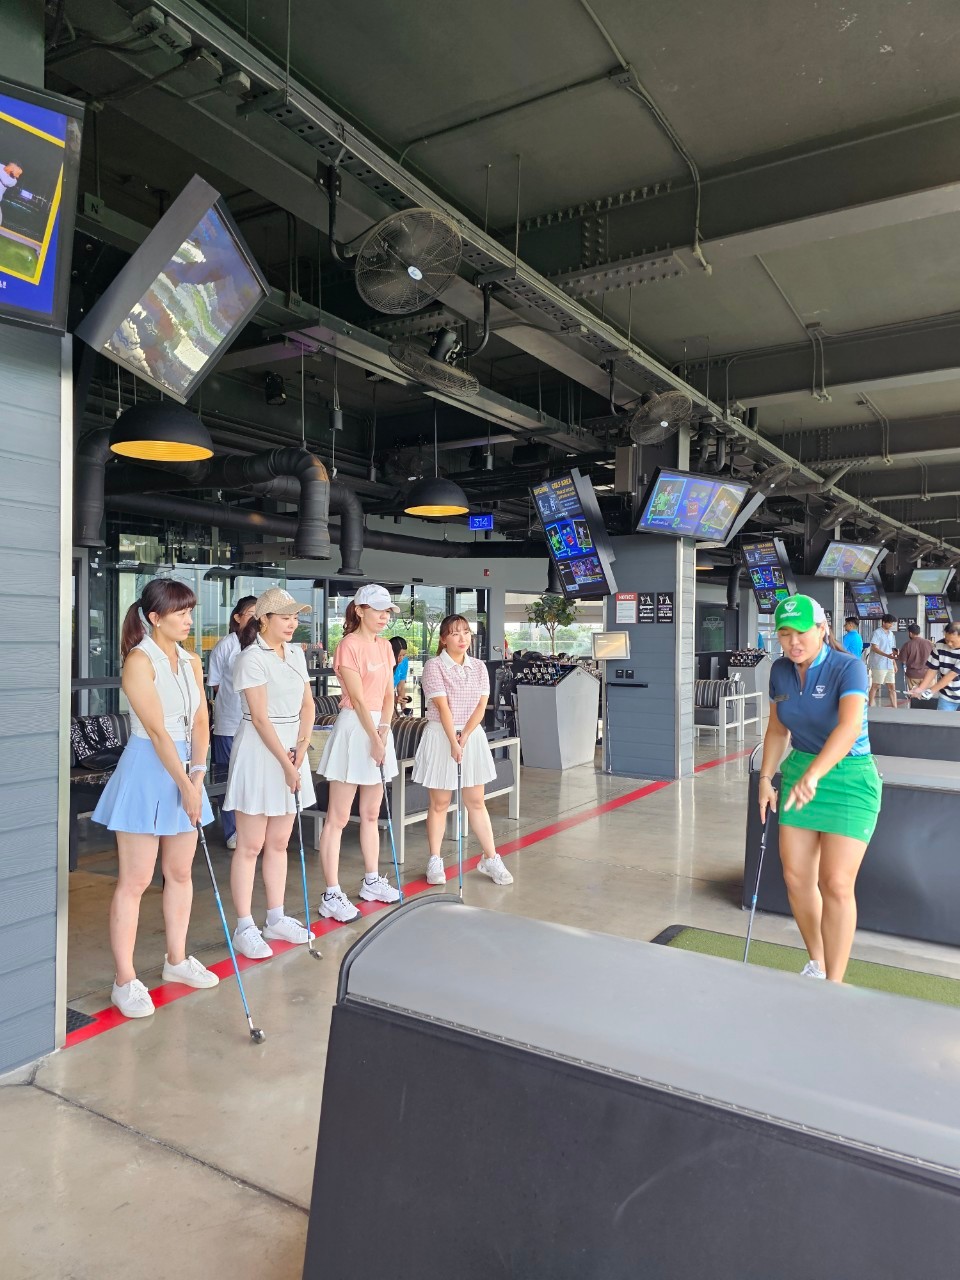 泰國高爾夫球俱樂部「Topgolf Megacity」曼谷運動酒吧泰國貴婦行程一定要來